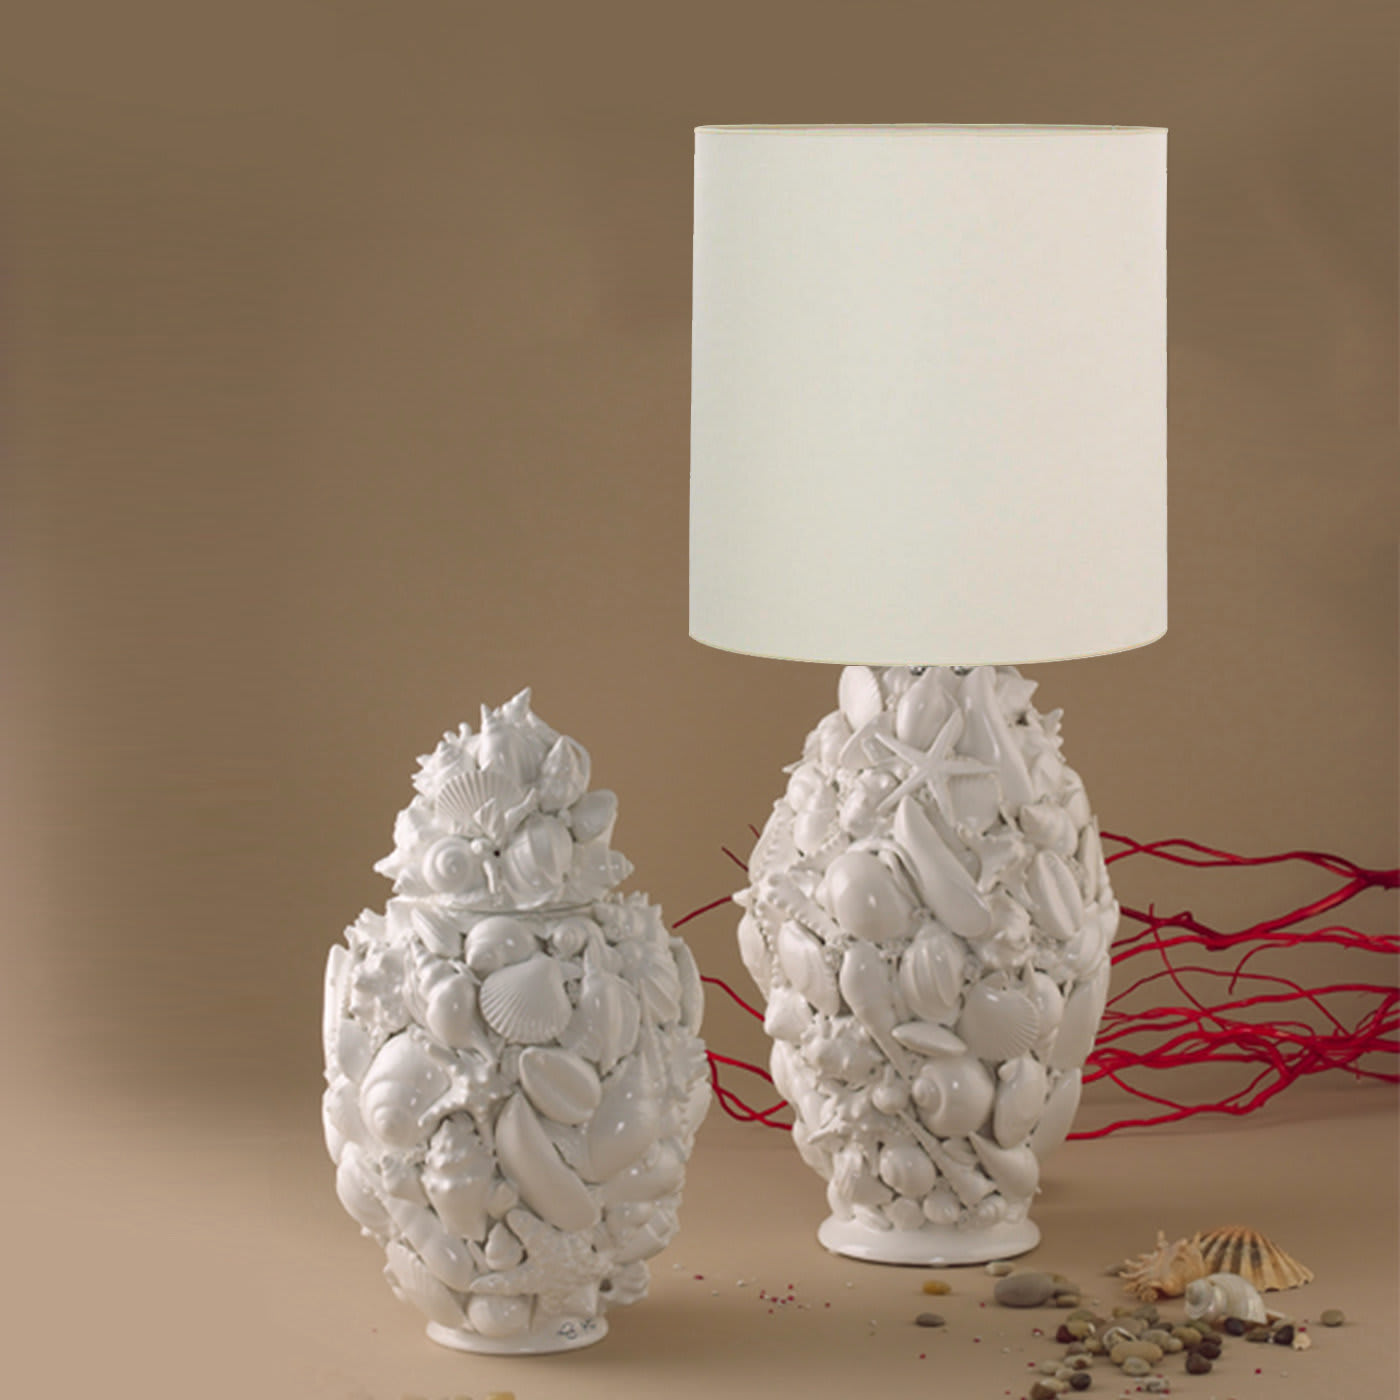 Conchiglia Ovale Ceramic Lamp - I Borbone Capodimonte